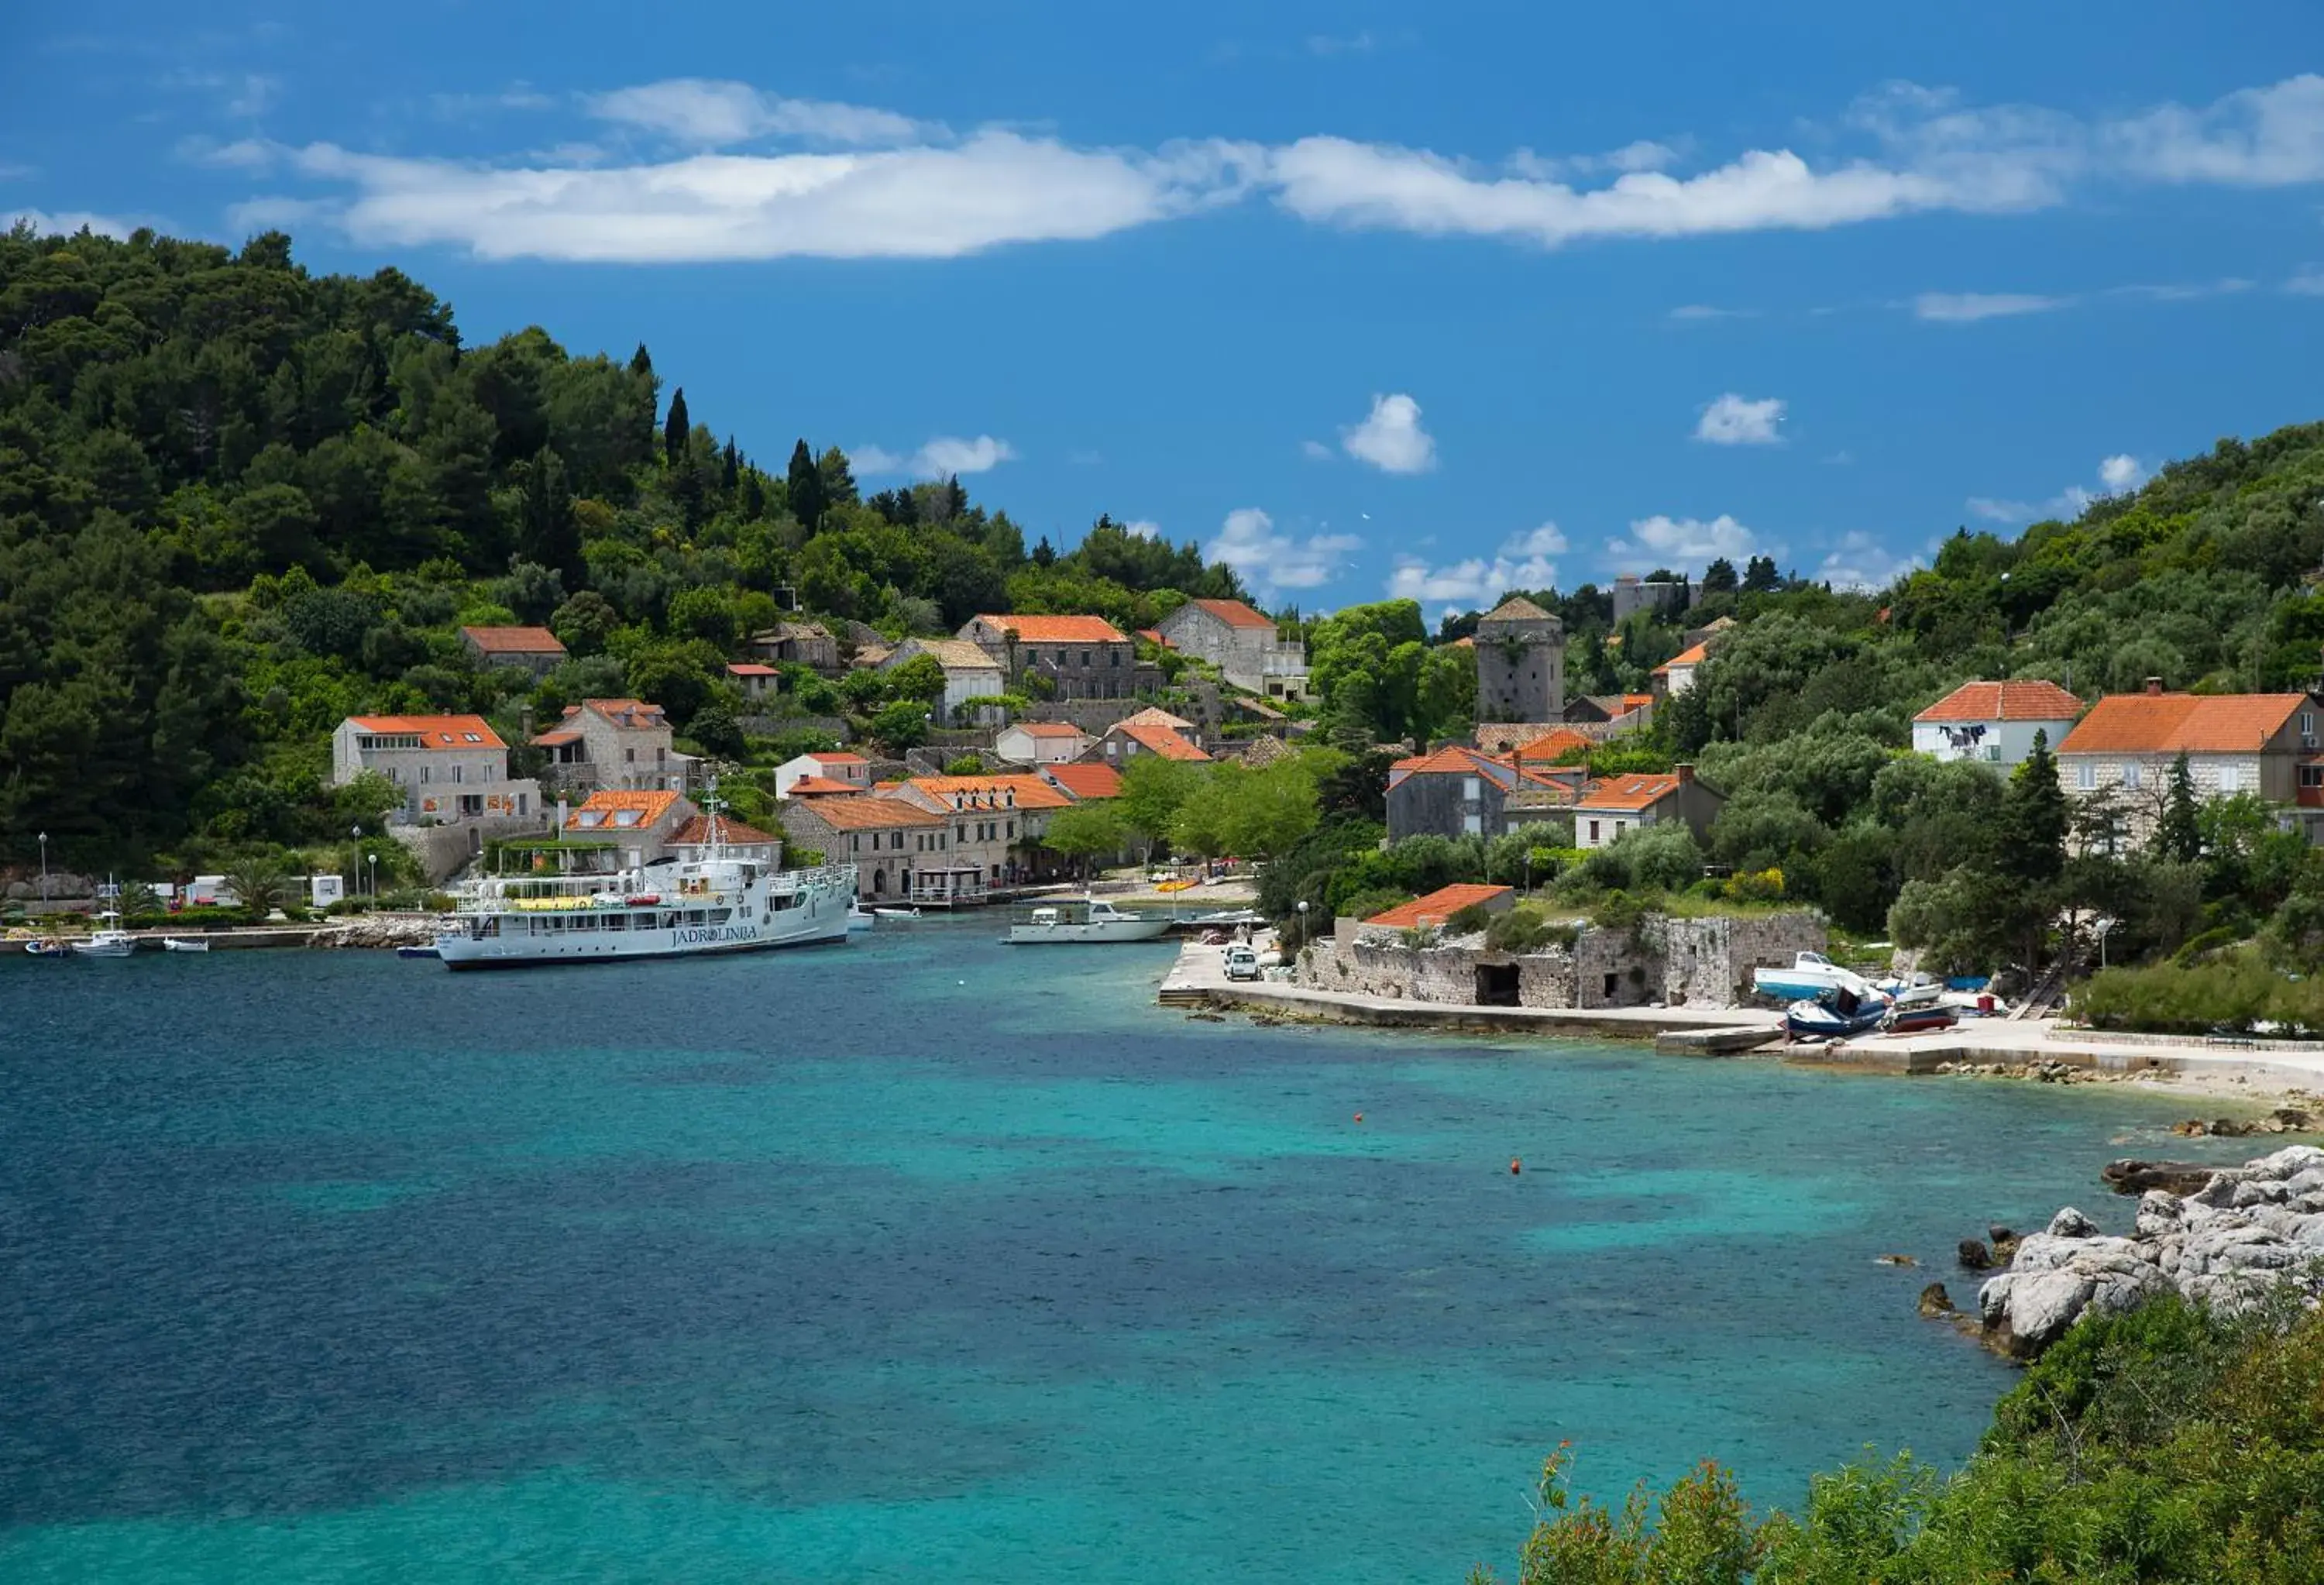 Nearby landmark in Hotel Bozica Dubrovnik Islands